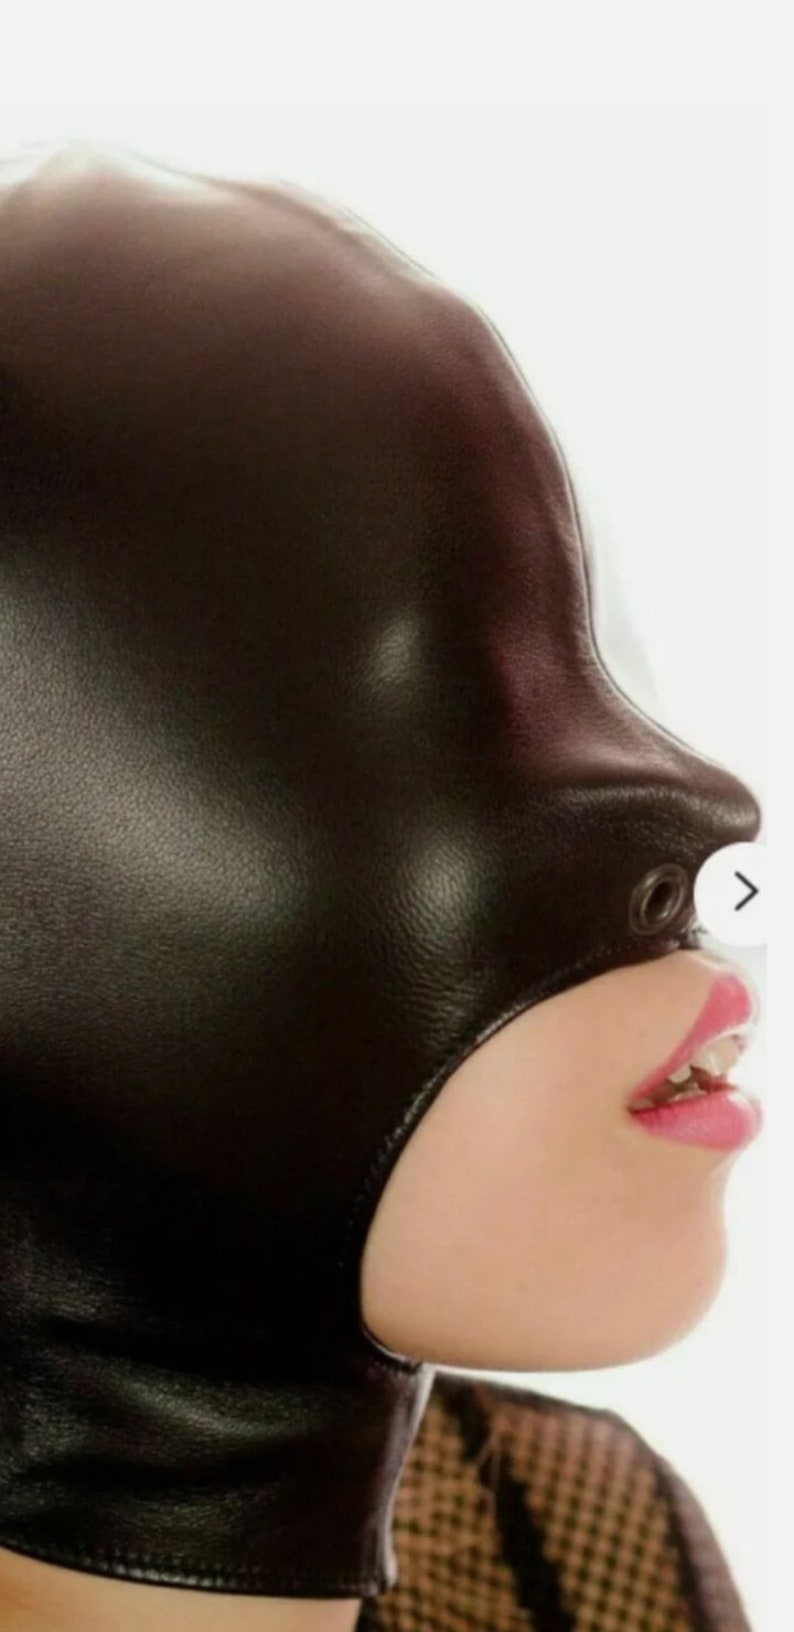 Leather bondage mask,Gimp mask, zips on eyes and mouth, adjustable back  Size m 